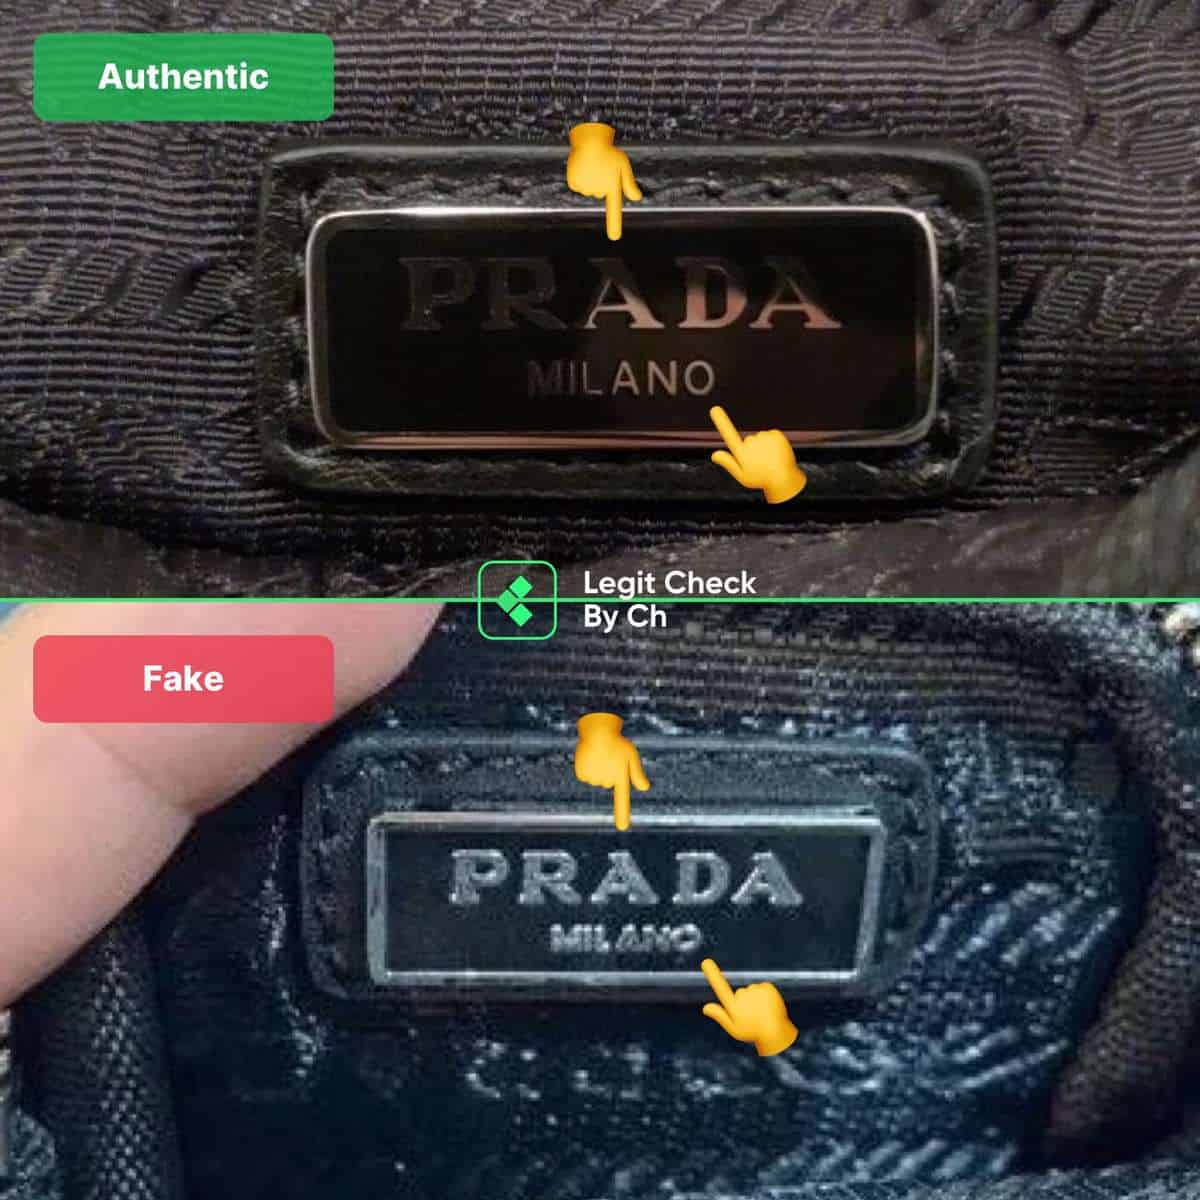 How to spot fake Pradas